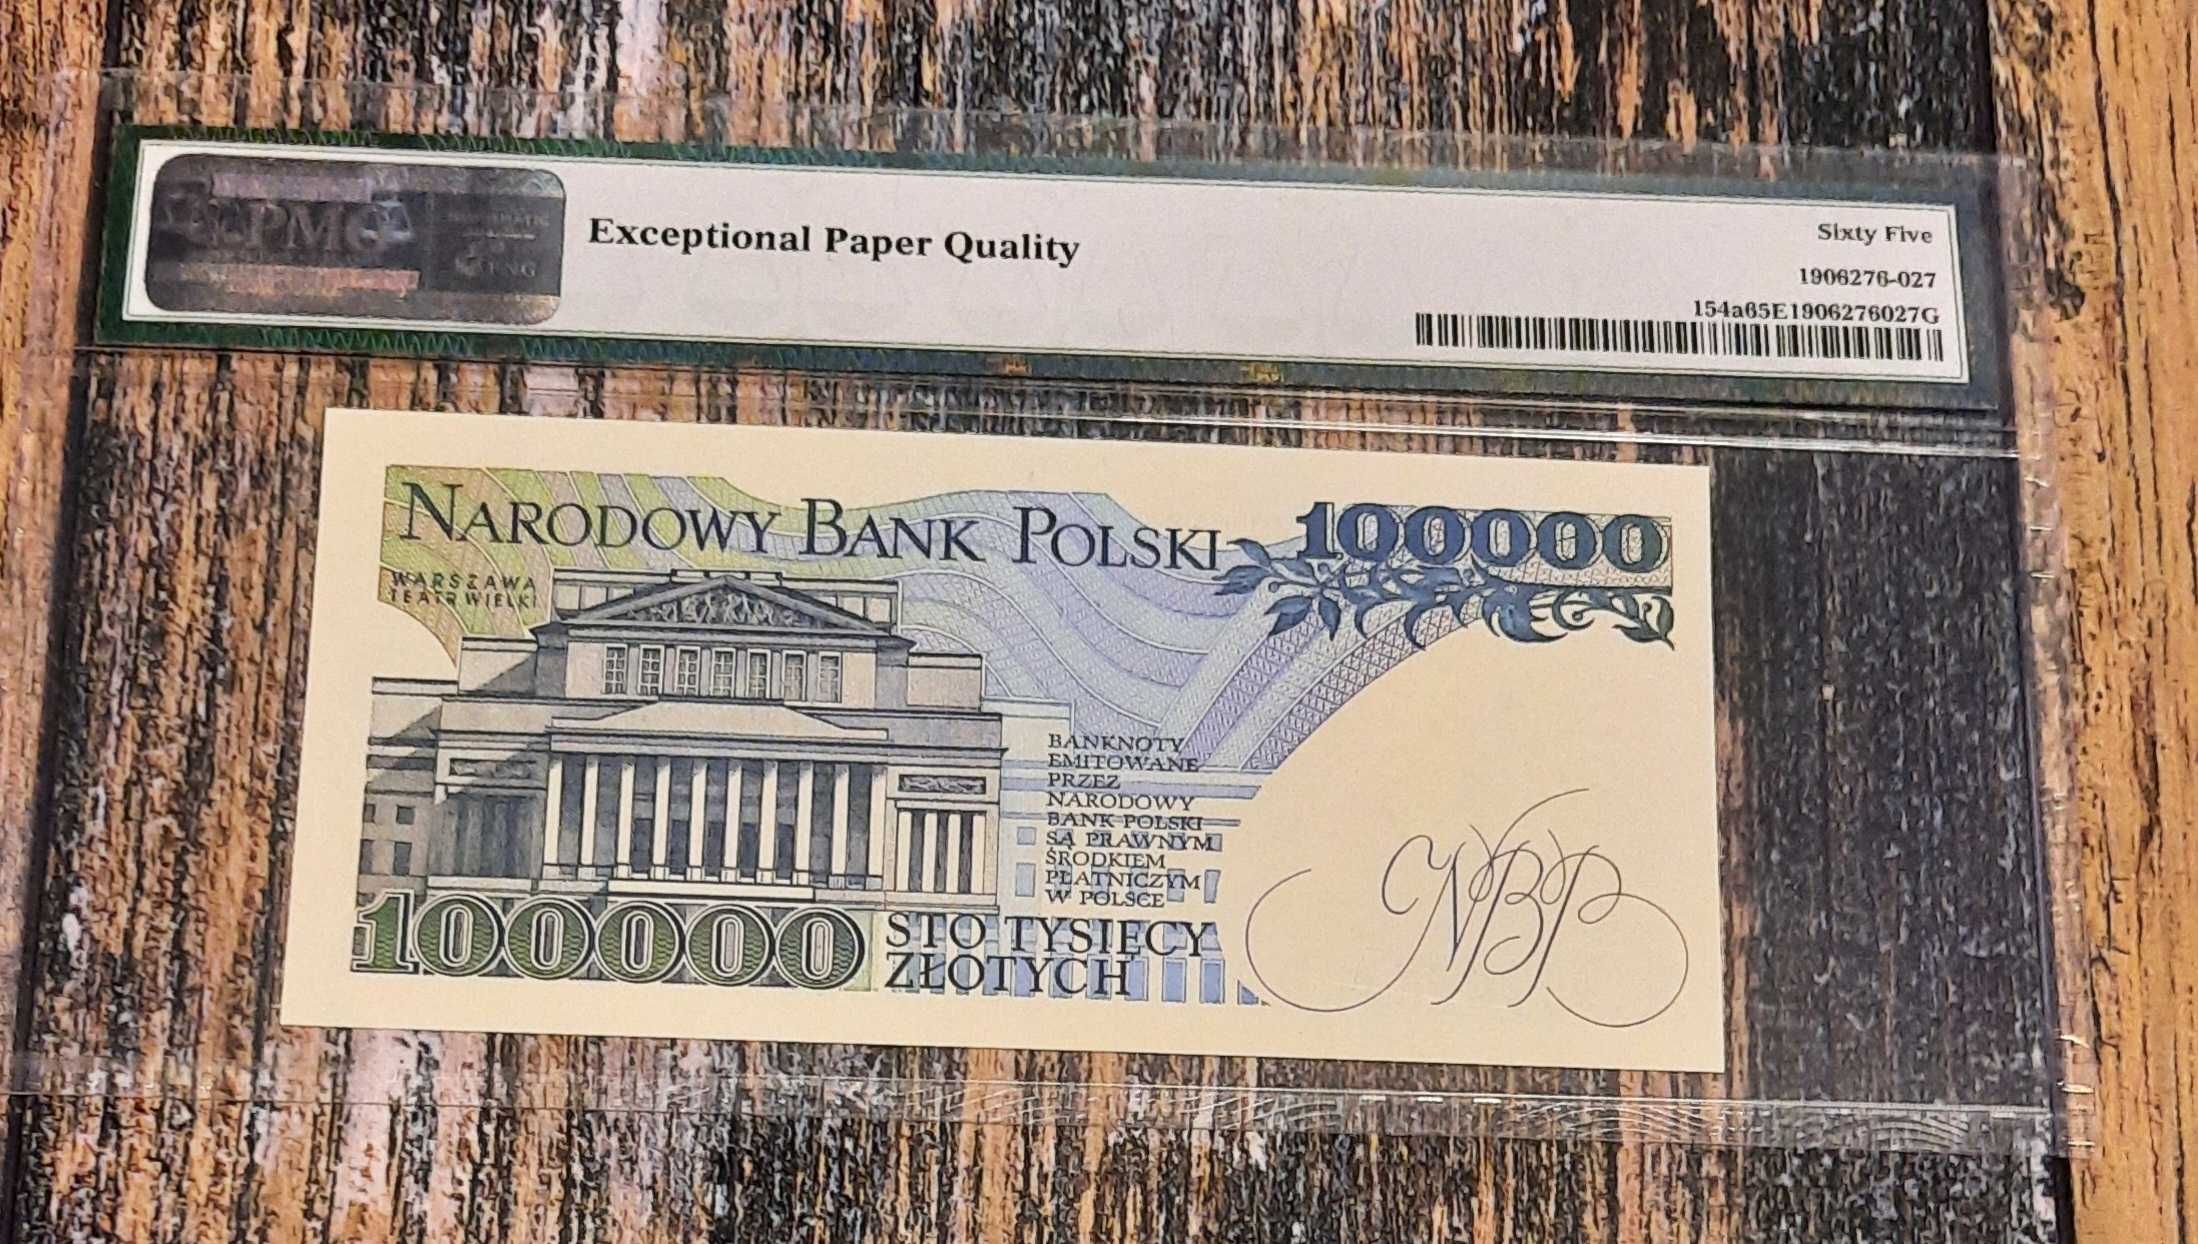 Banknot 100000 zł.prl w gradingu widoczny na skanie 1990r